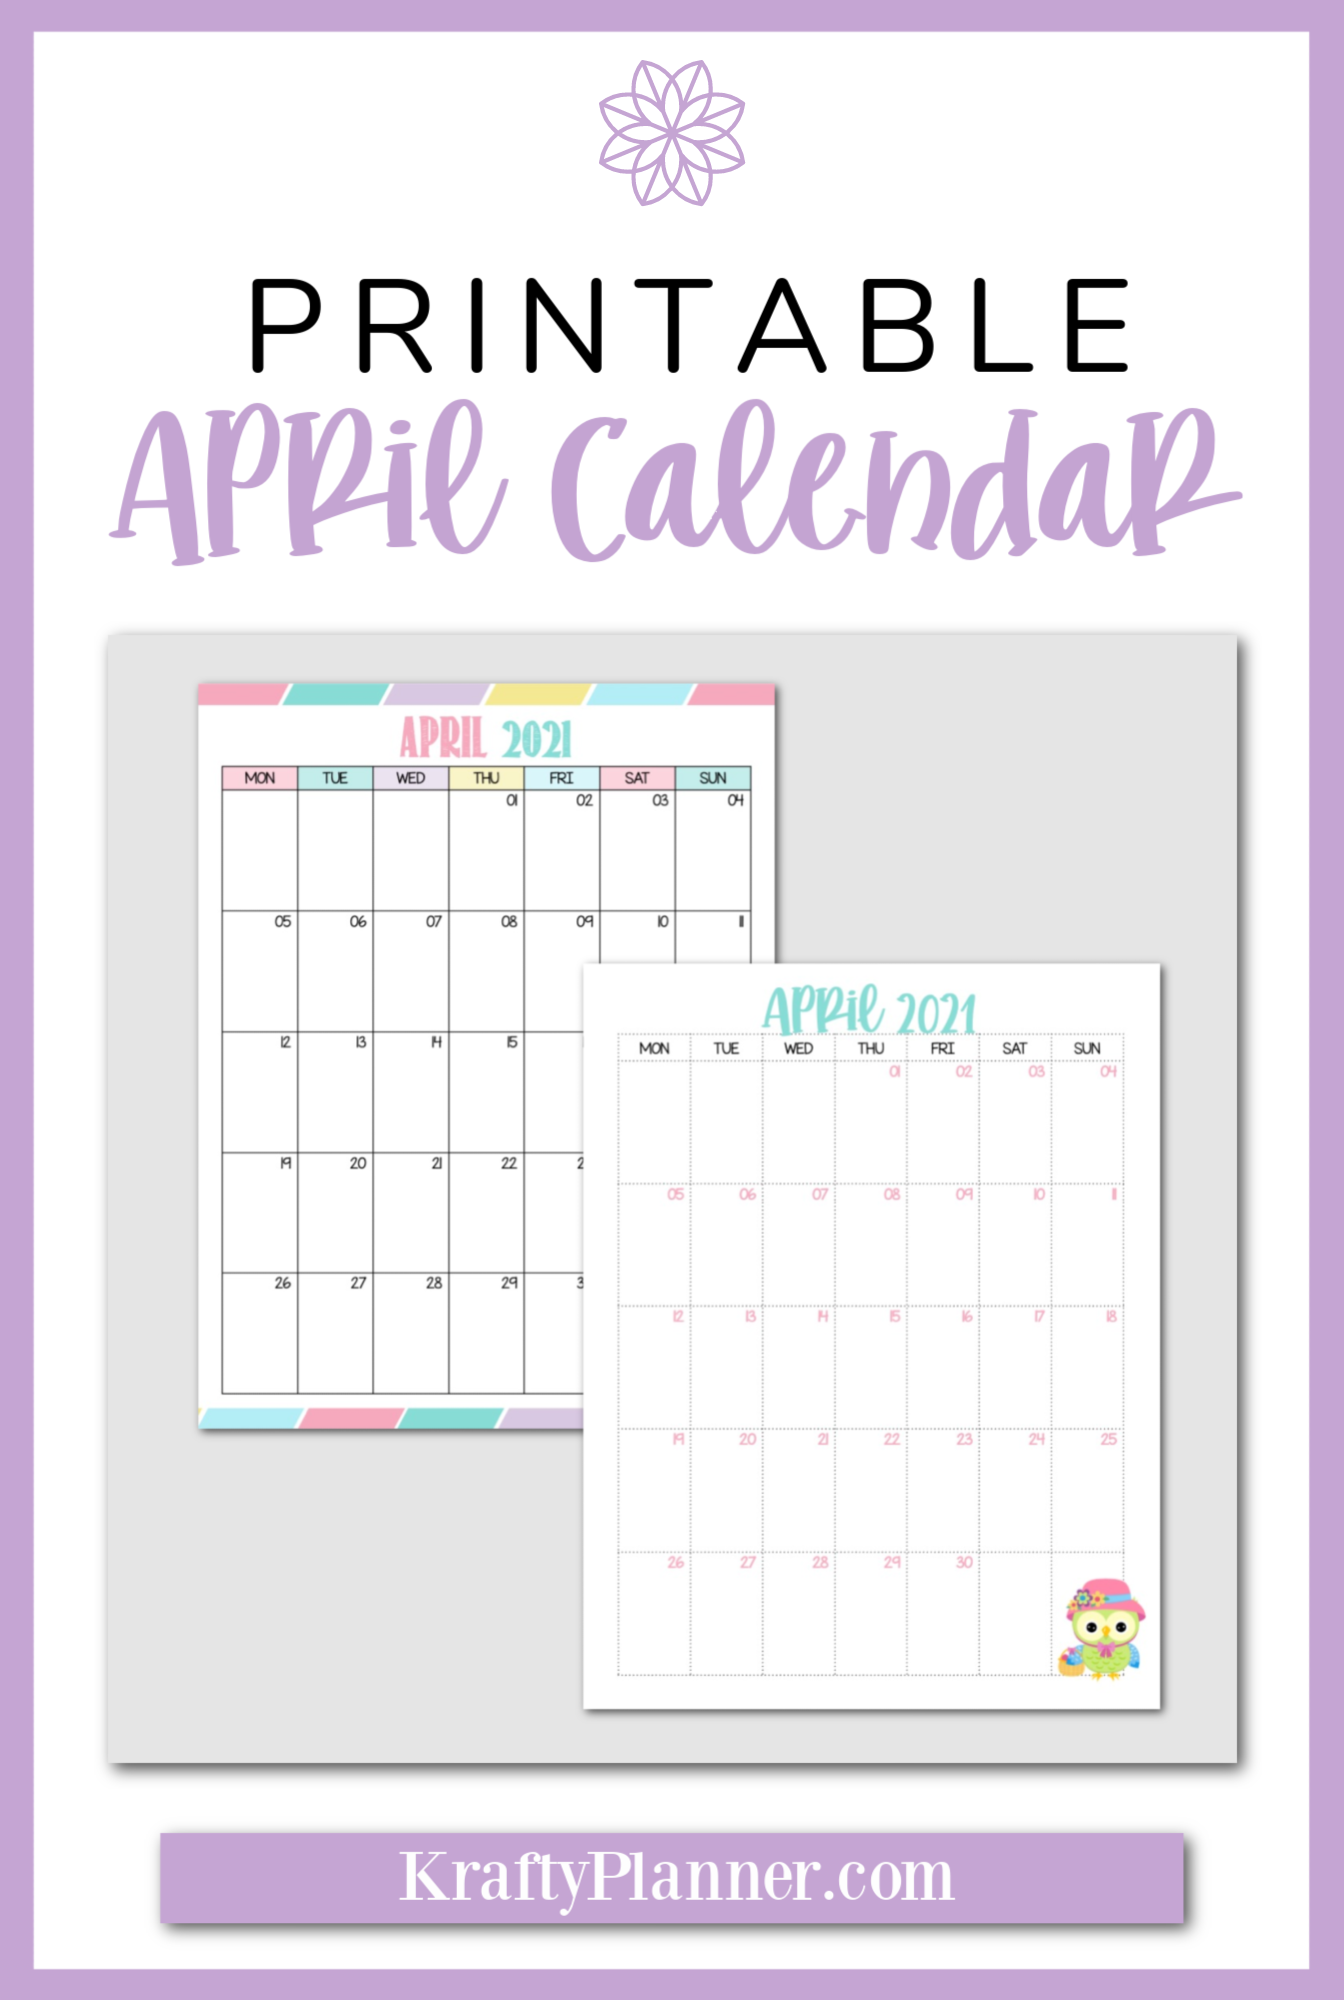 Free Printable April Calendar PIN 2.png